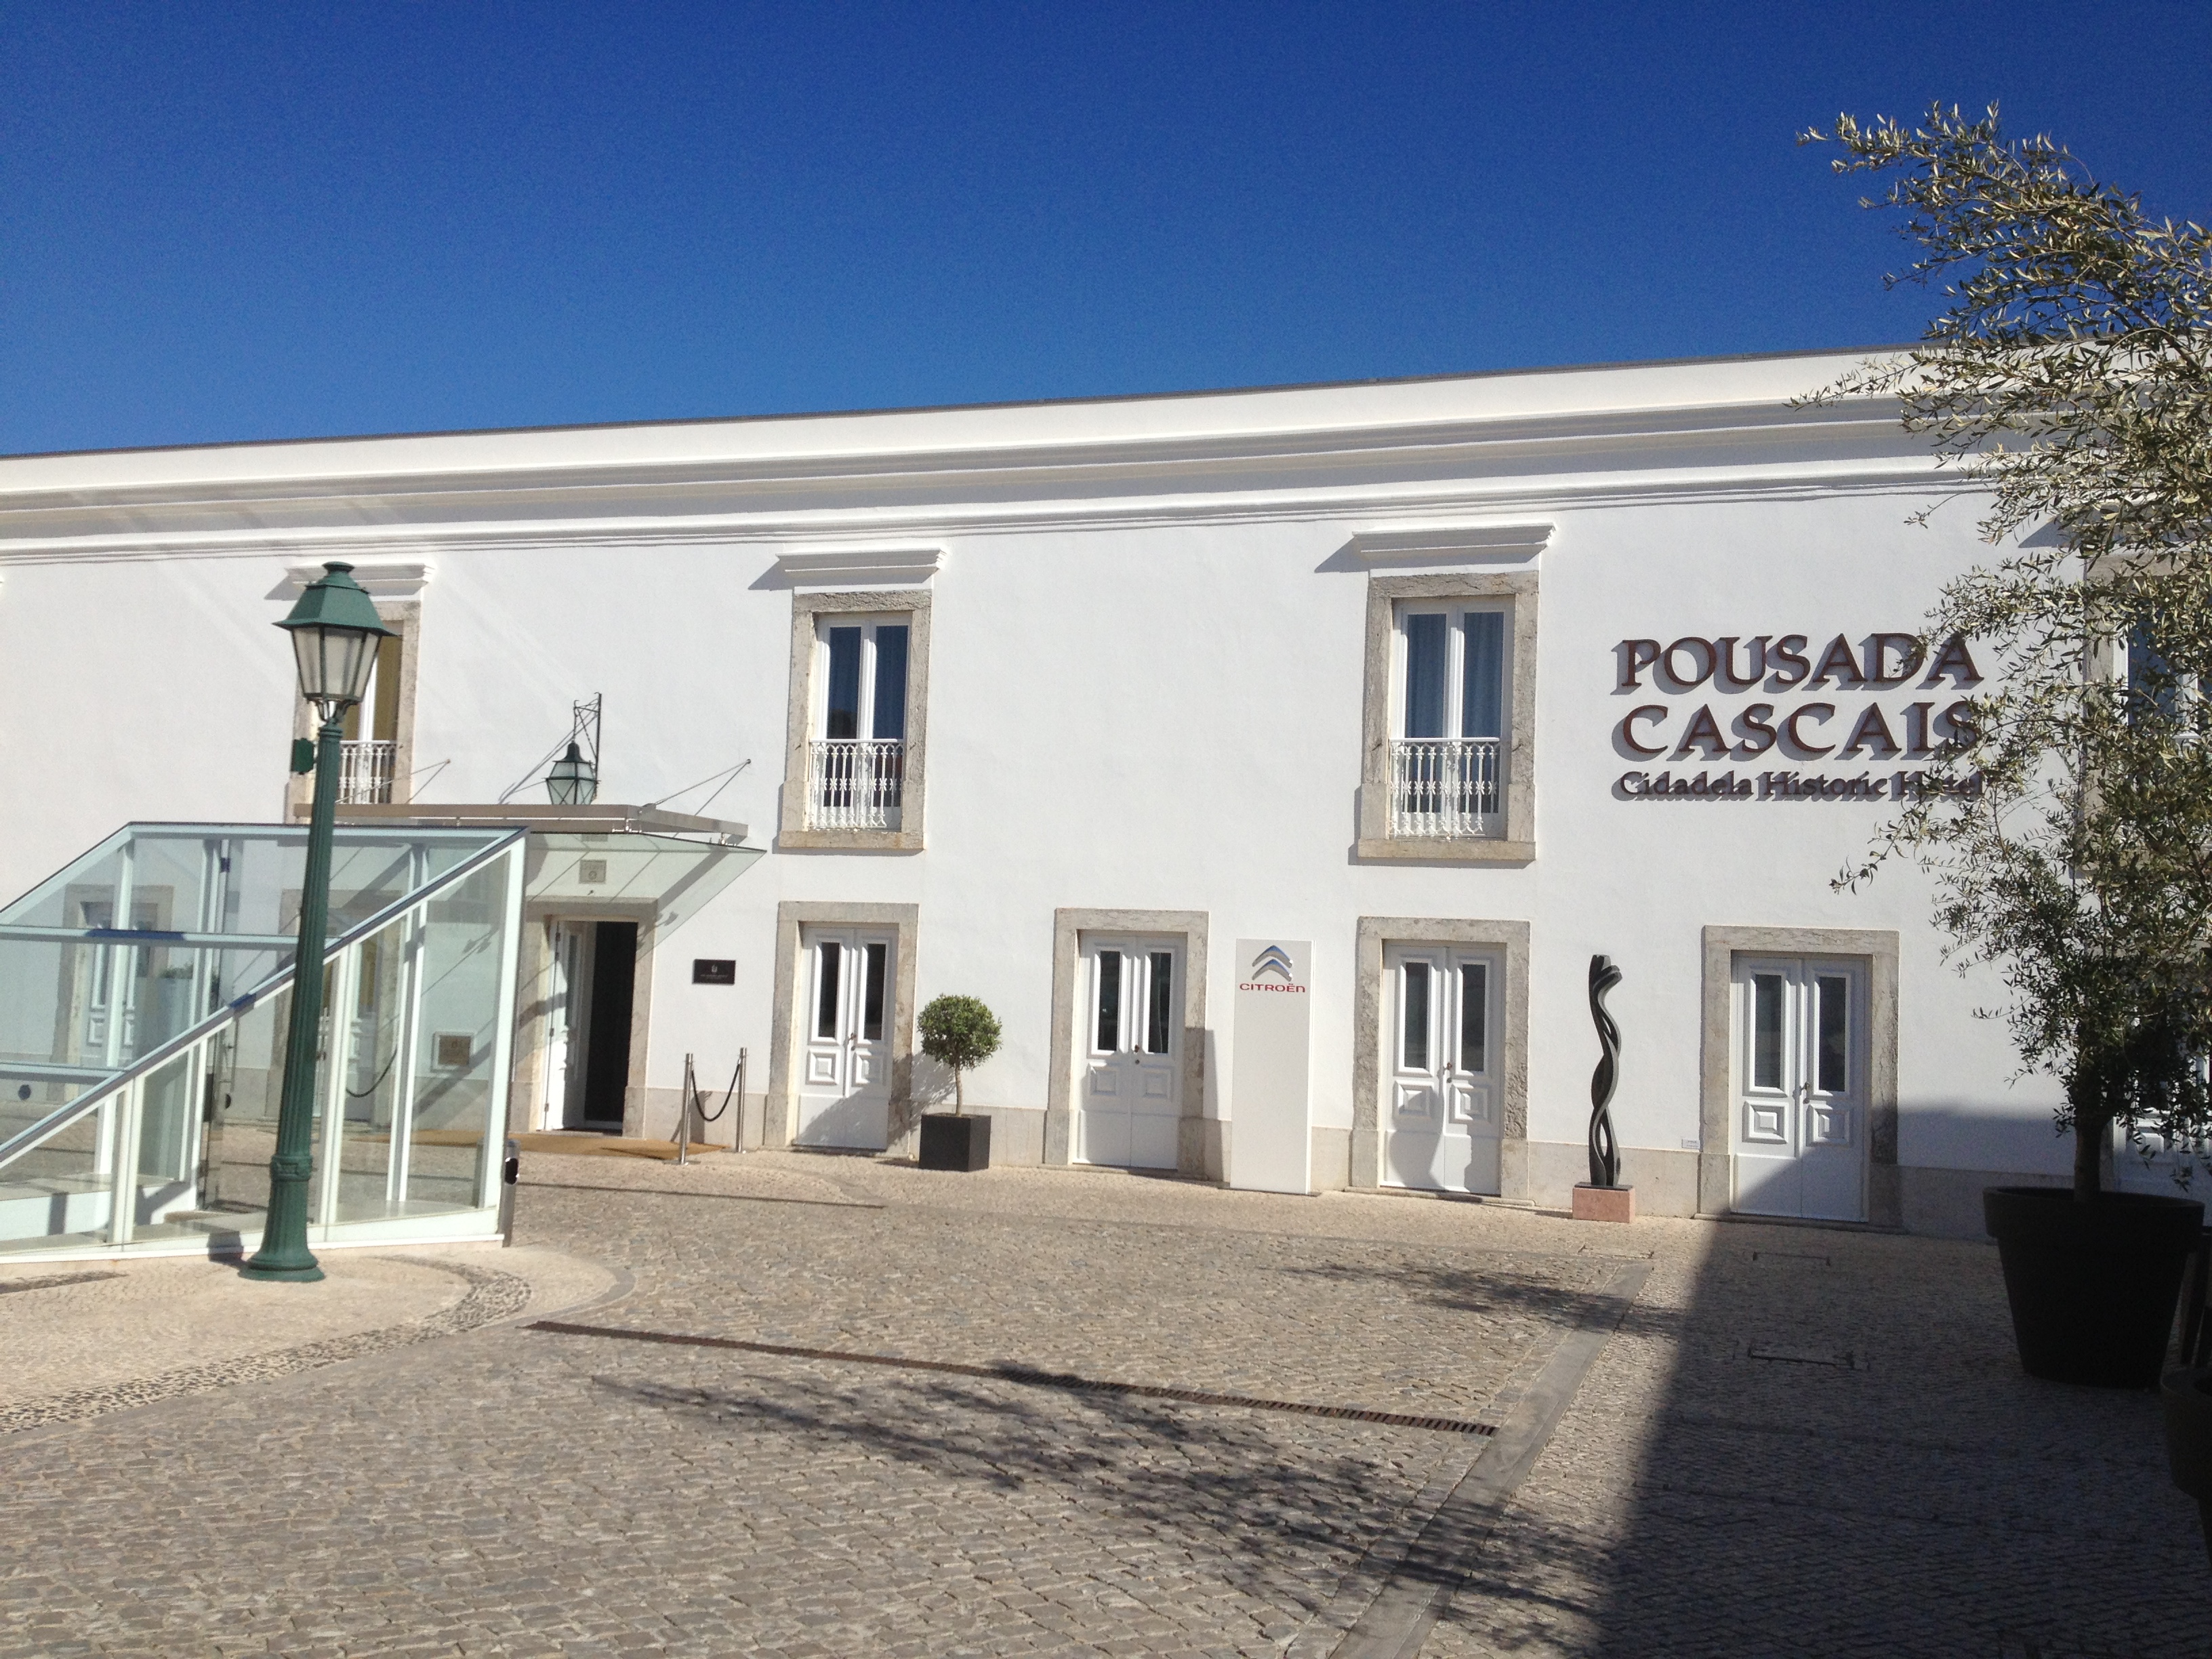 The outside of the Pousada Cascais hotel